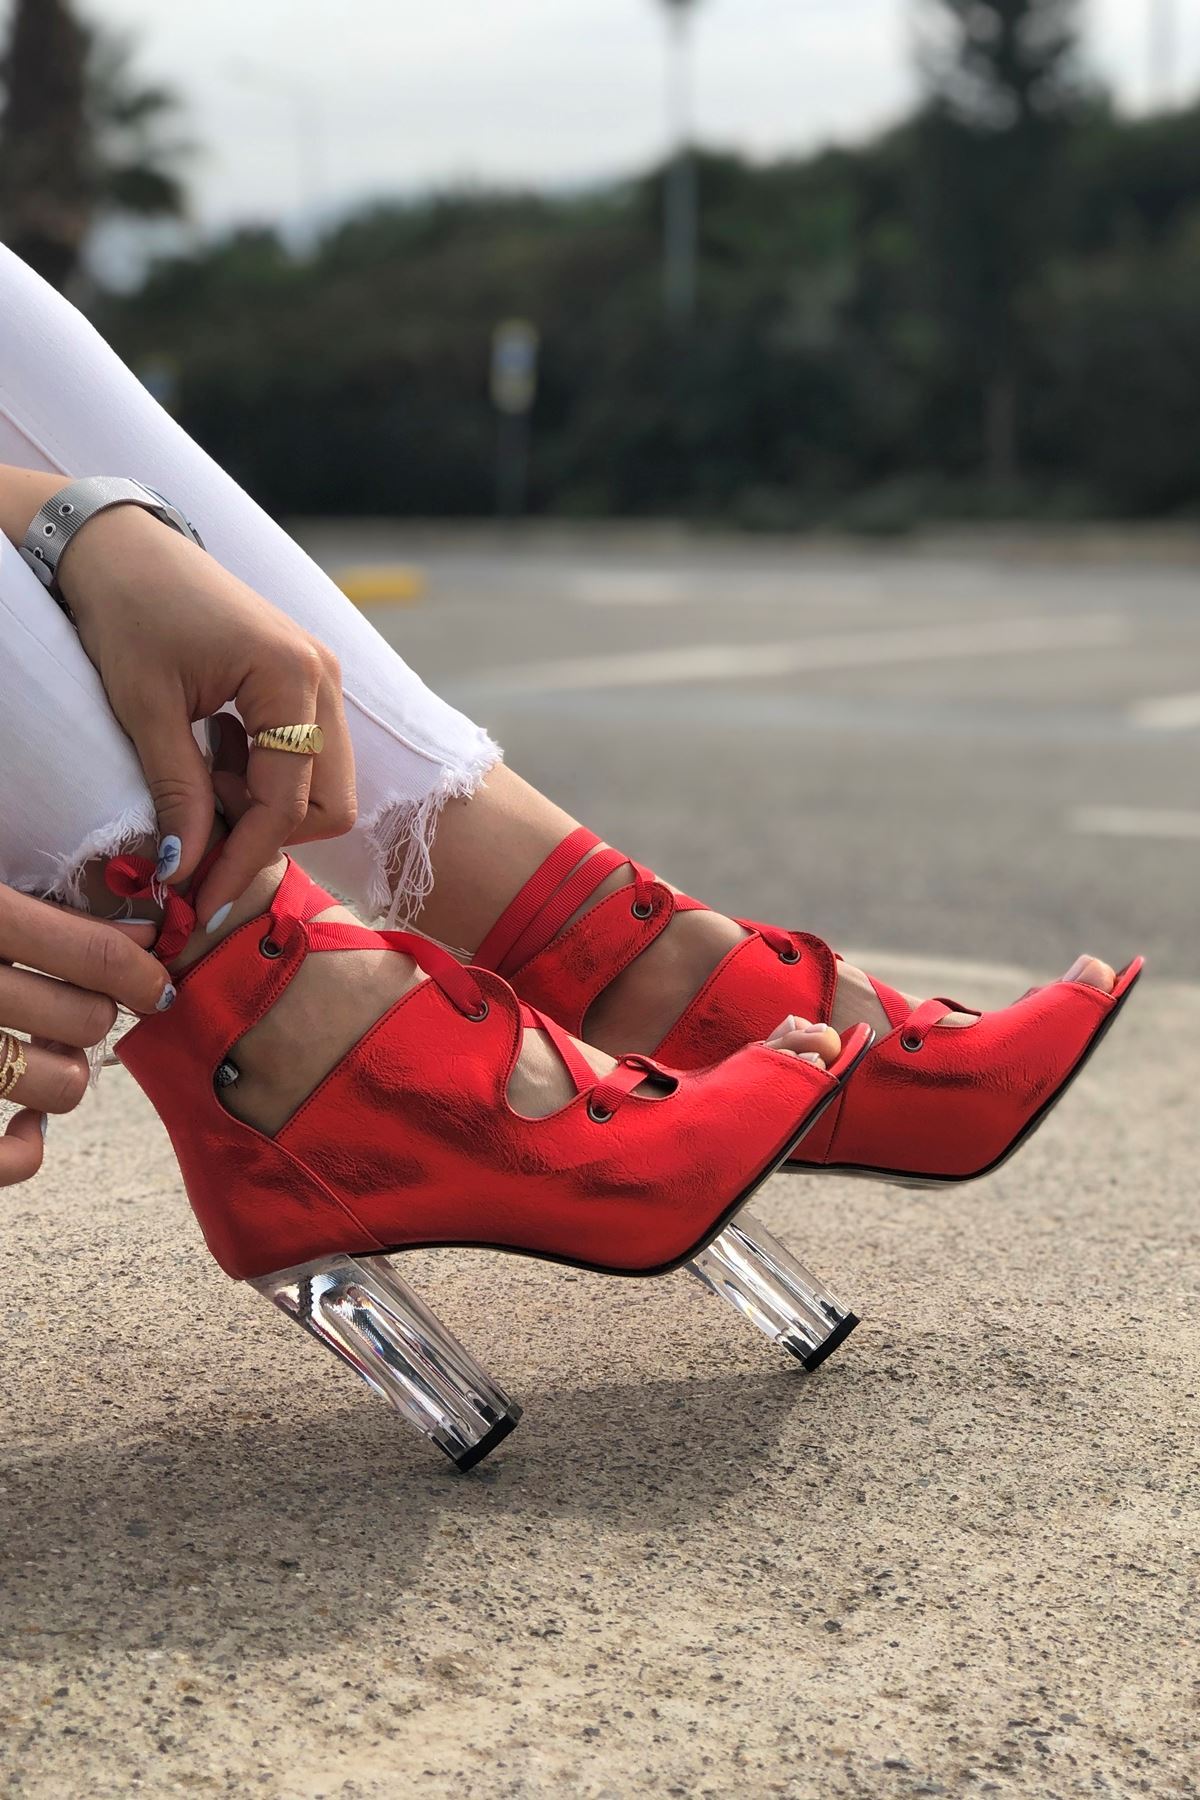 Amata Kırmızı Parlak Topuklu Kadın Ayakkabı